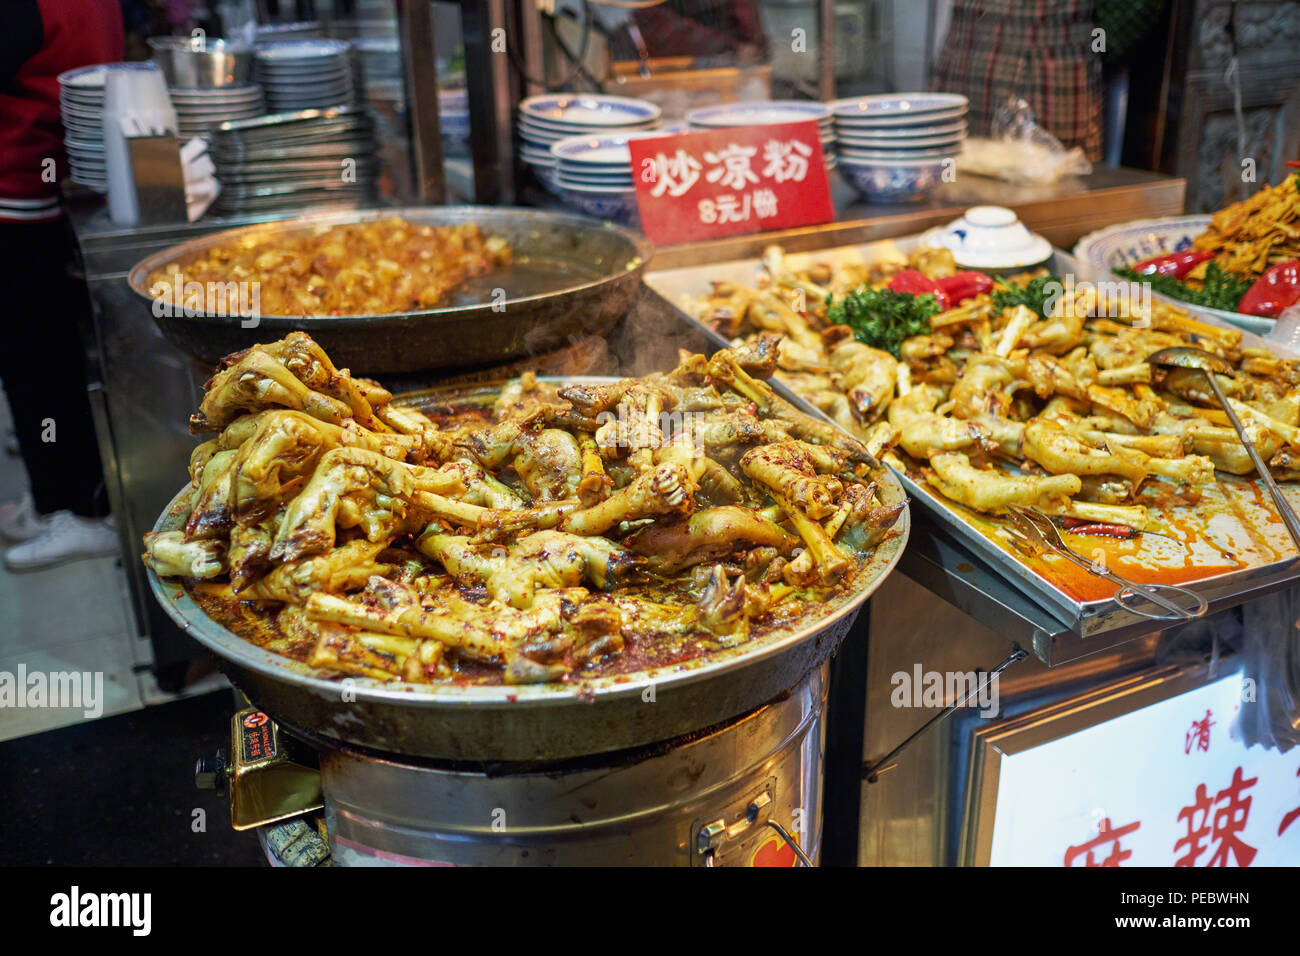 Sabot de chèvre cuite et les pieds dans un marché de l'alimentation de rue, de la rue musulmane, Xi/an, Chine Banque D'Images